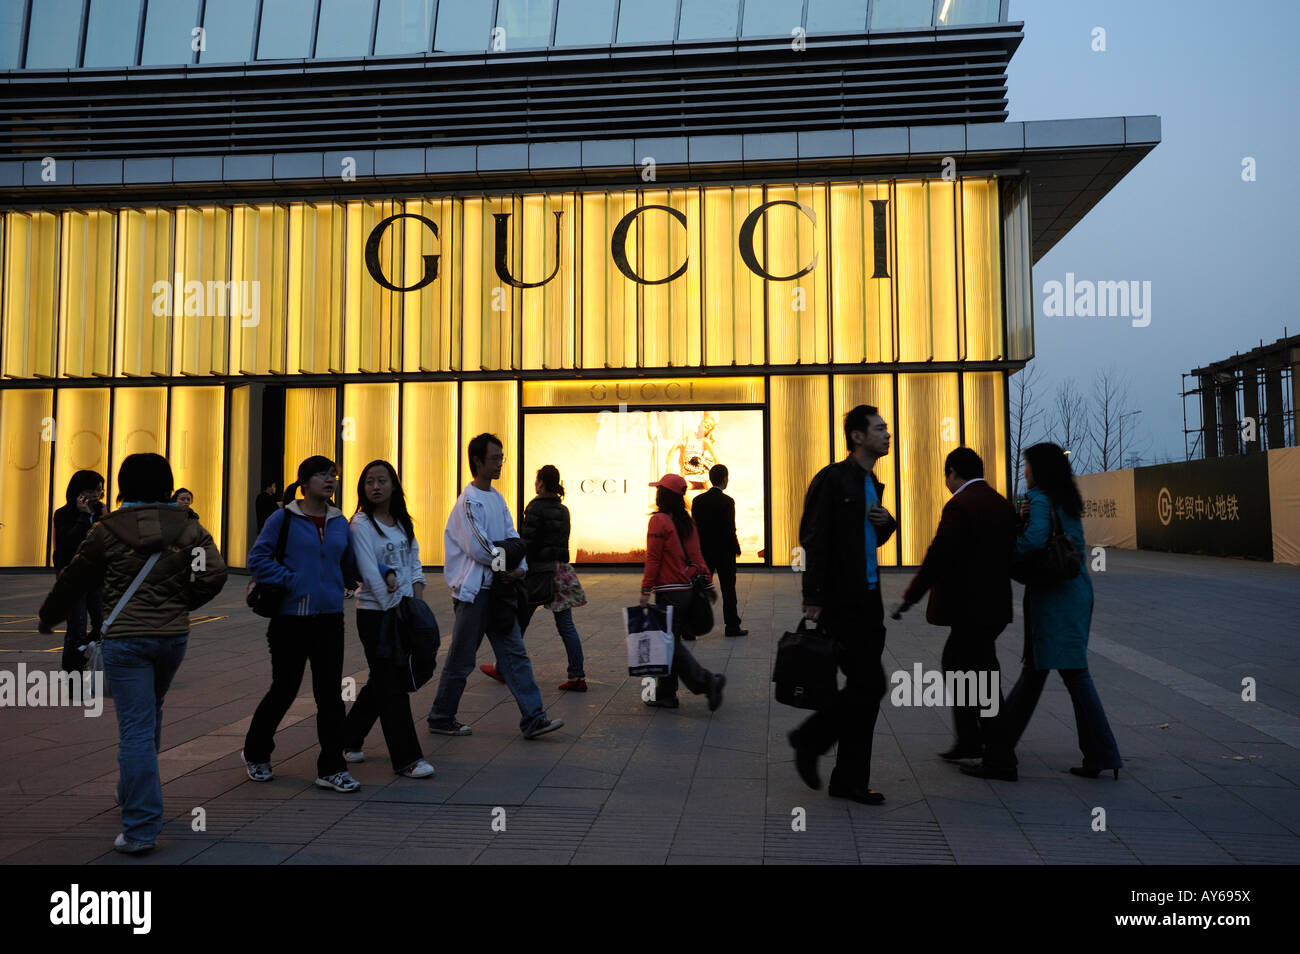 Negozio di Gucci a Shin Kong Place in CBD Pechino, Cina. 03-Apr-2008 Foto Stock